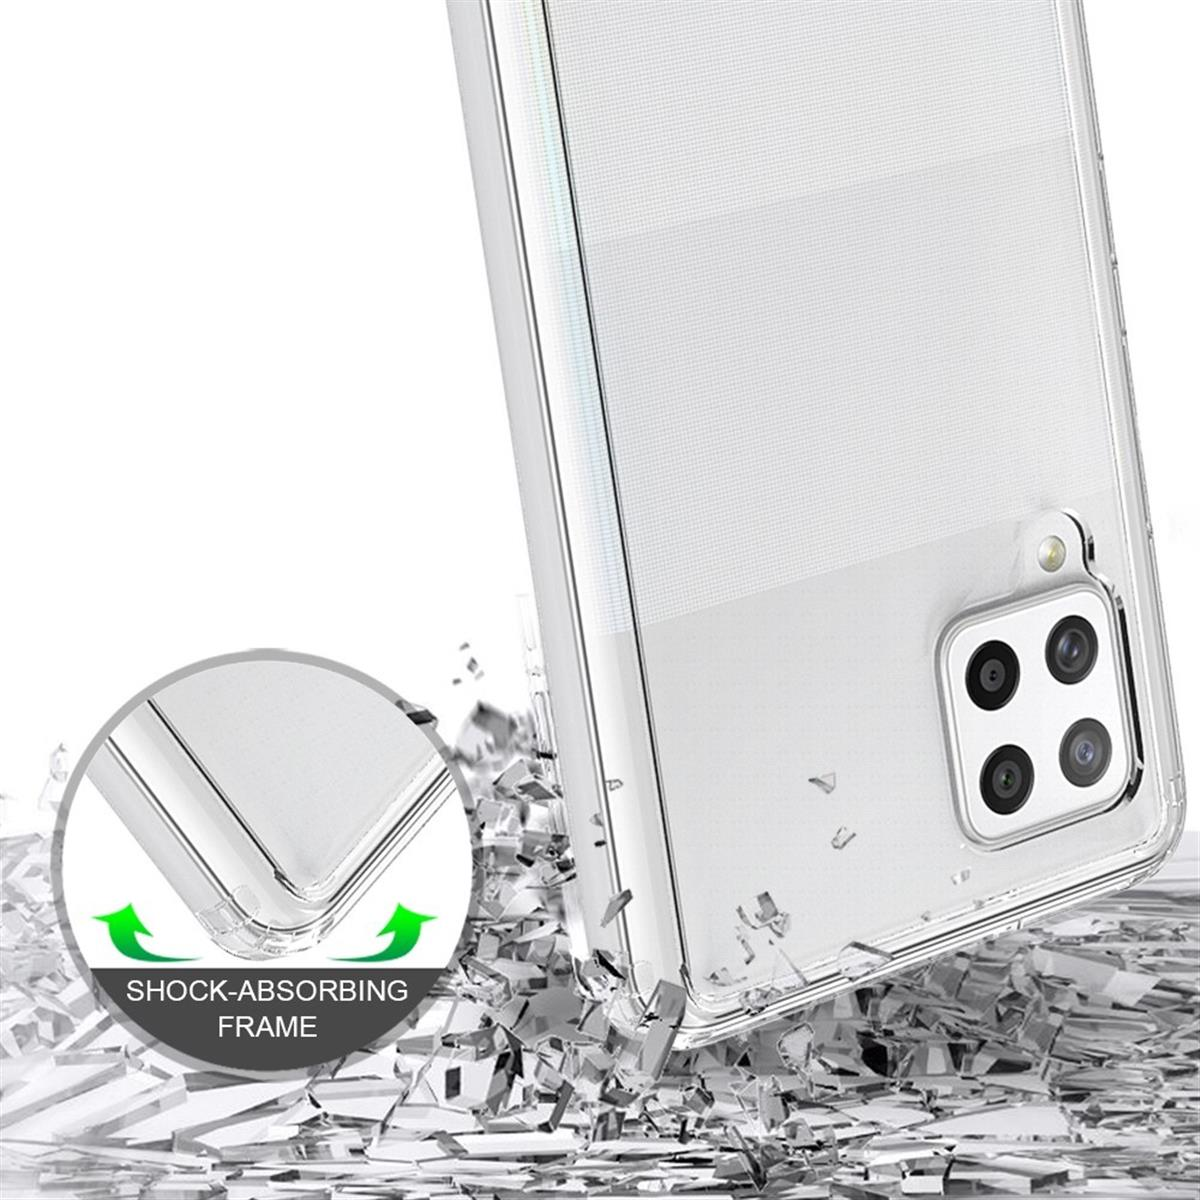 COVERKINGZ Handycase Galaxy Backcover, Kameraschutz, mit Display- und 5G, Transparent A42 Samsung